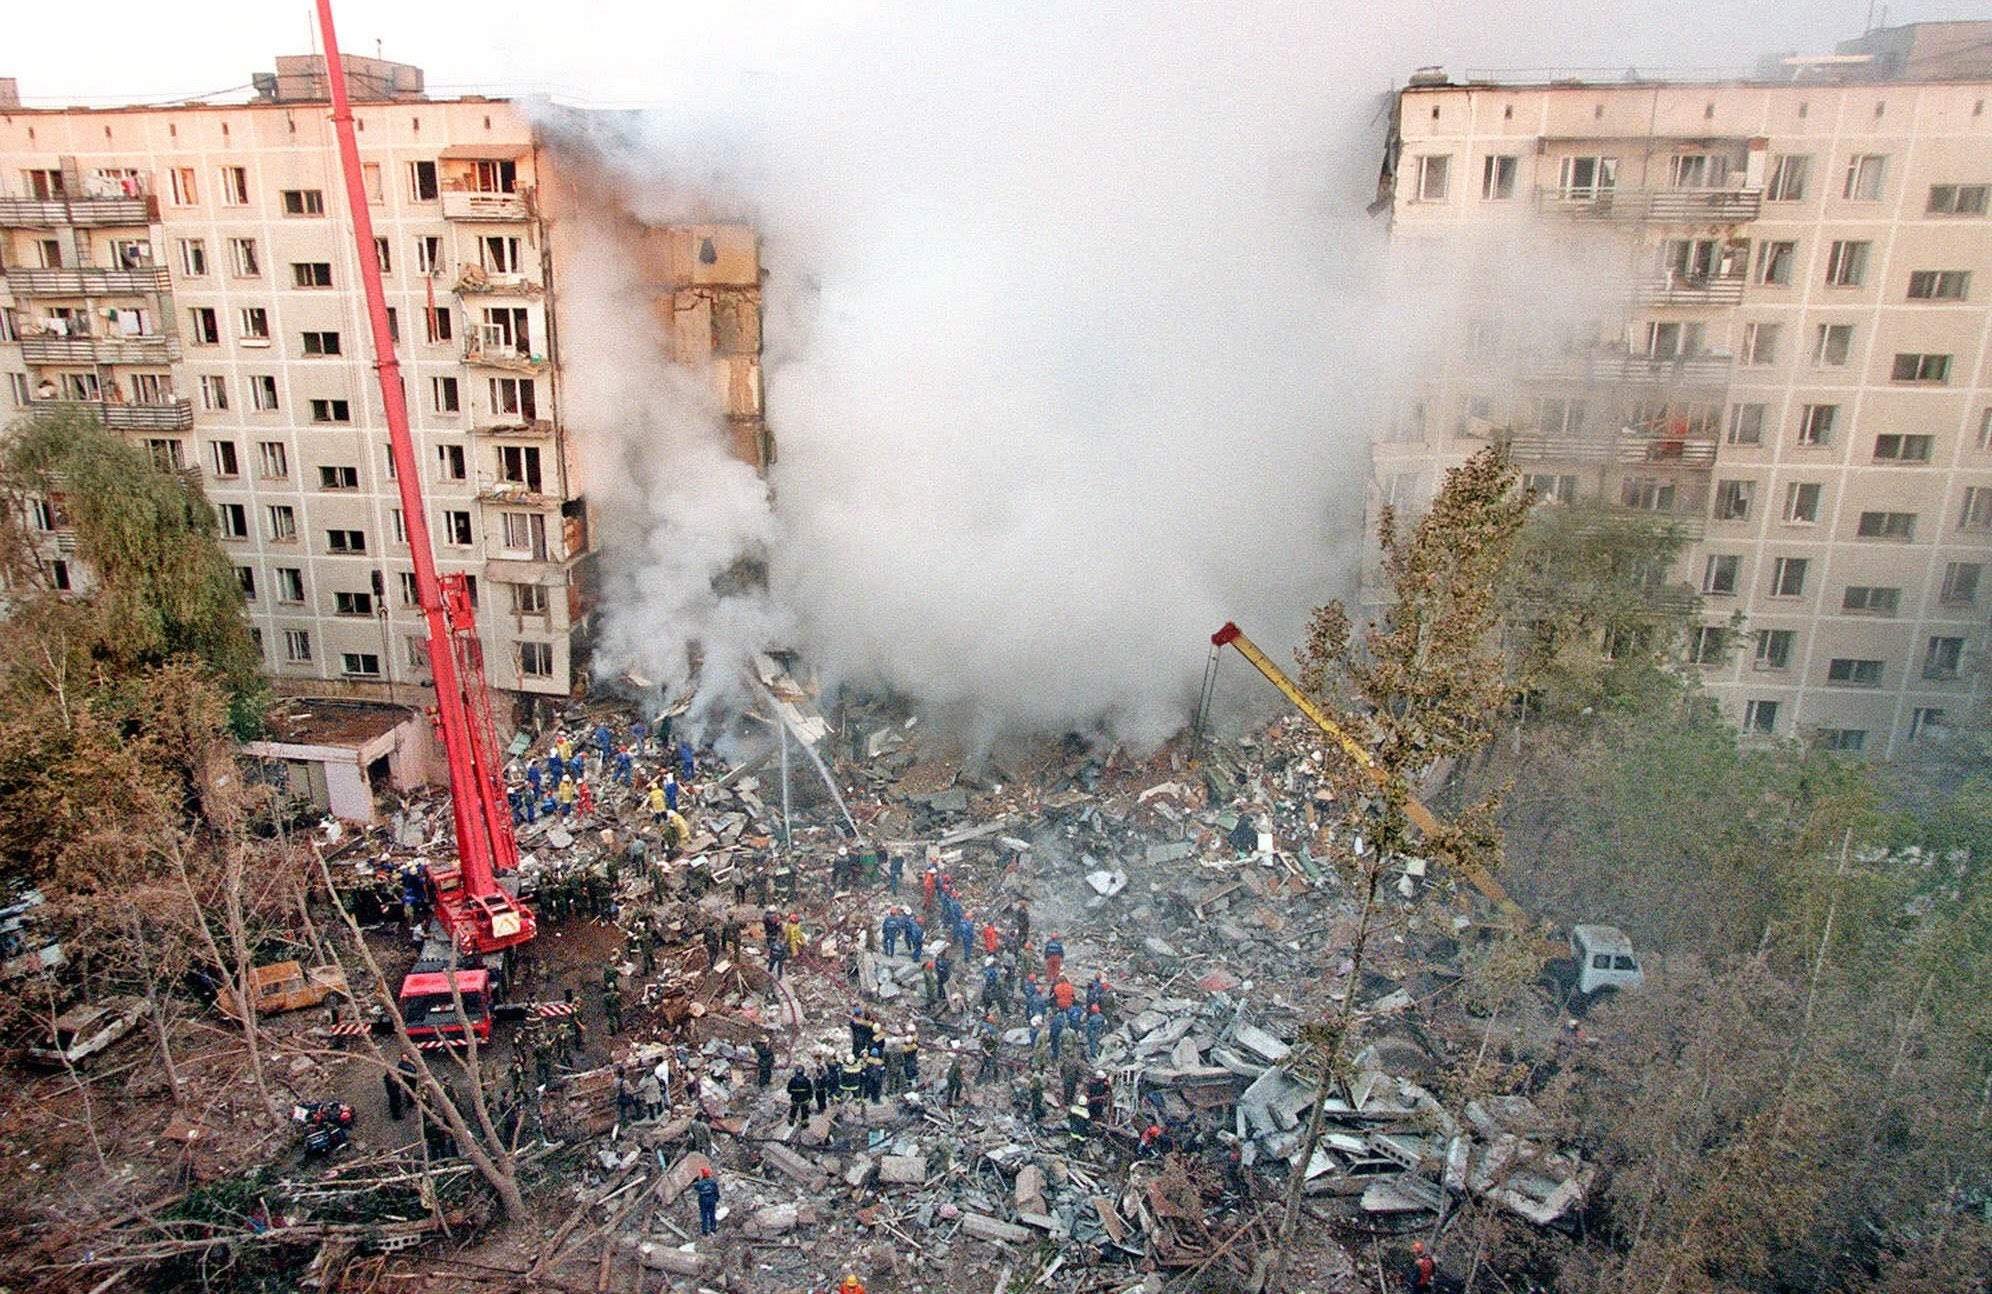 печатники взрыв 1999 москва